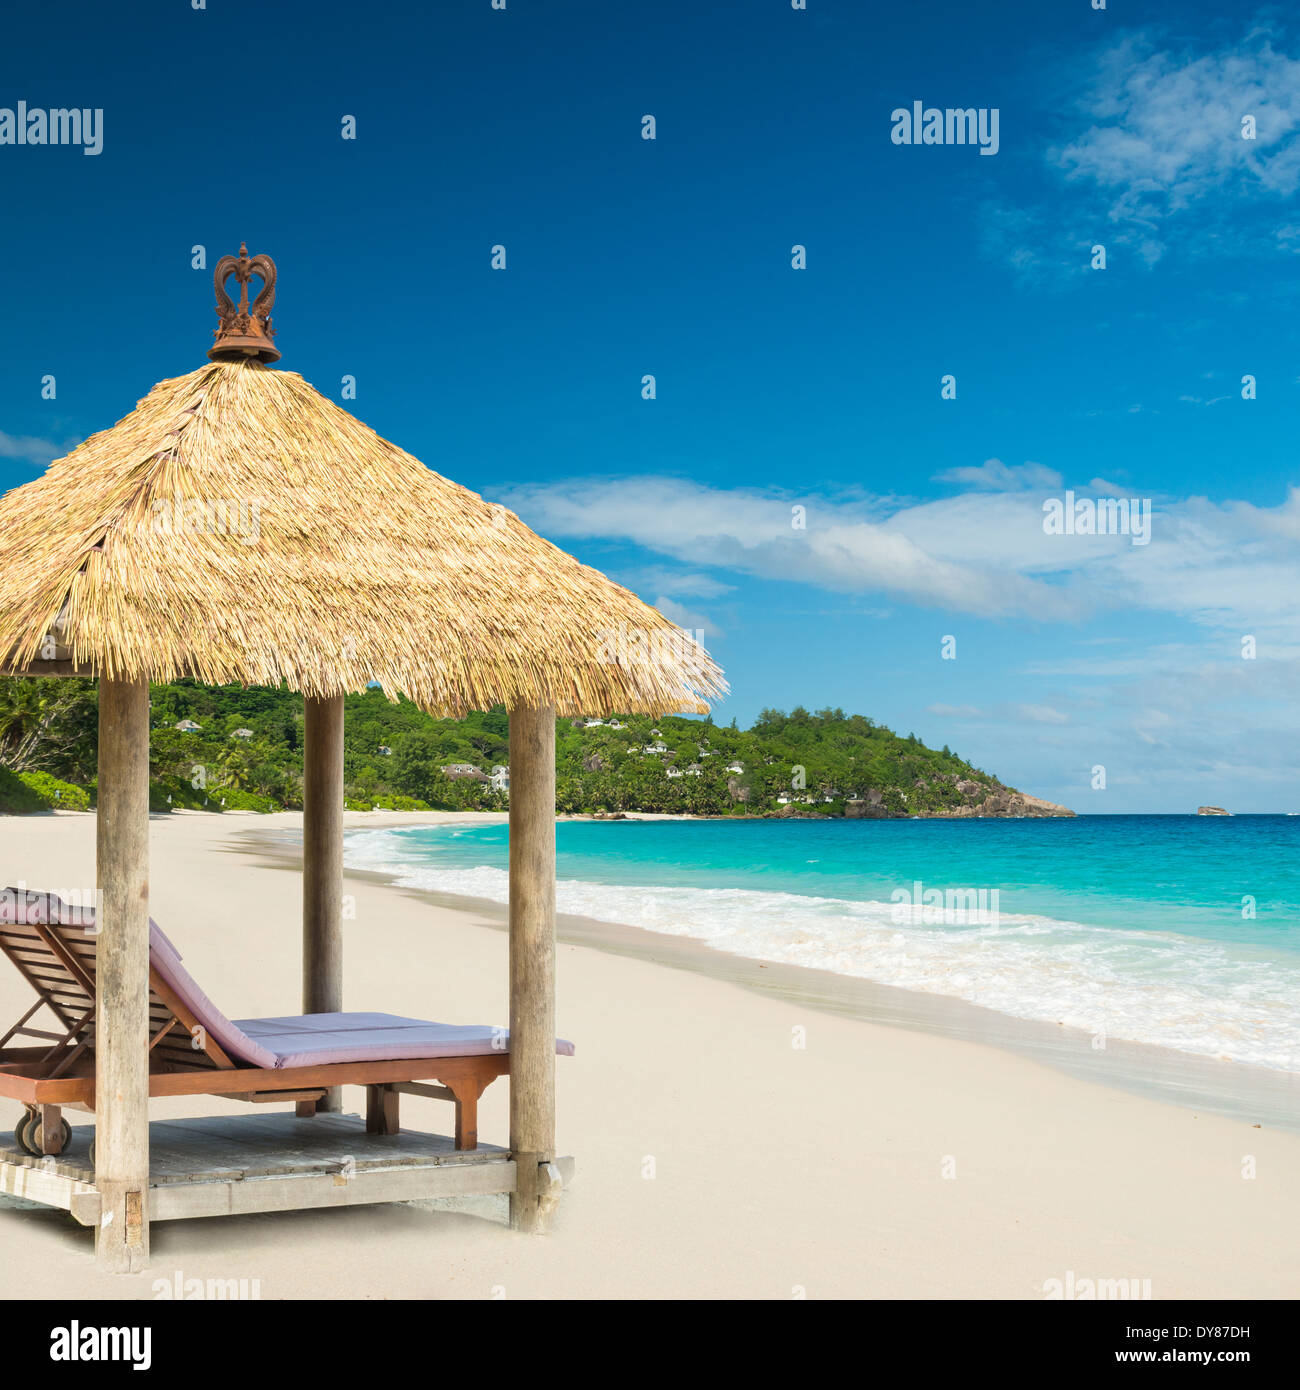 Des lits de plage avec pavillon et mer turquoise Banque D'Images